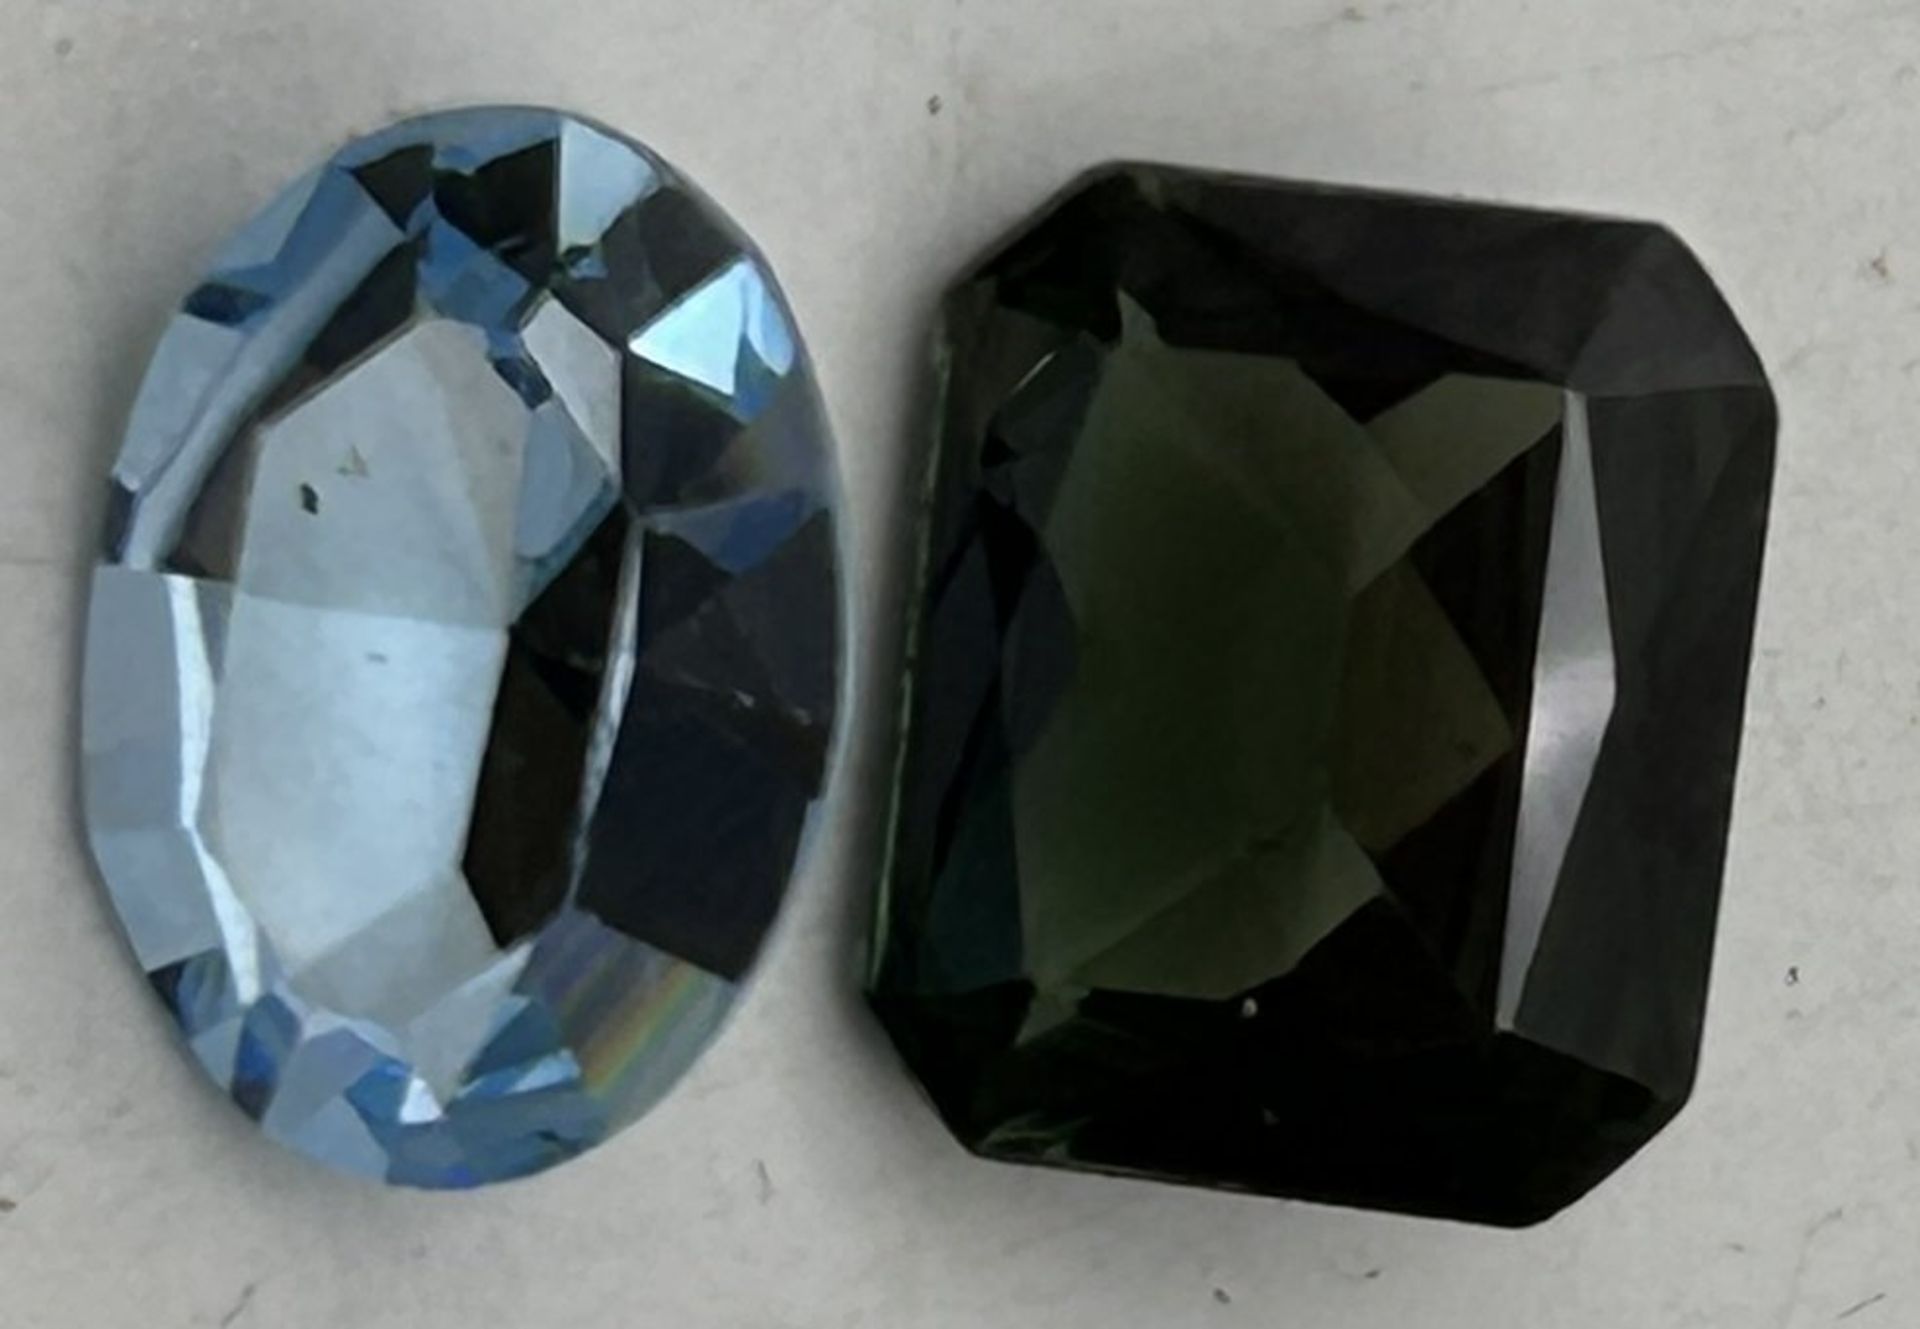 2 Edel-Steine, hellblau und grün, mit Schliff - Image 2 of 5